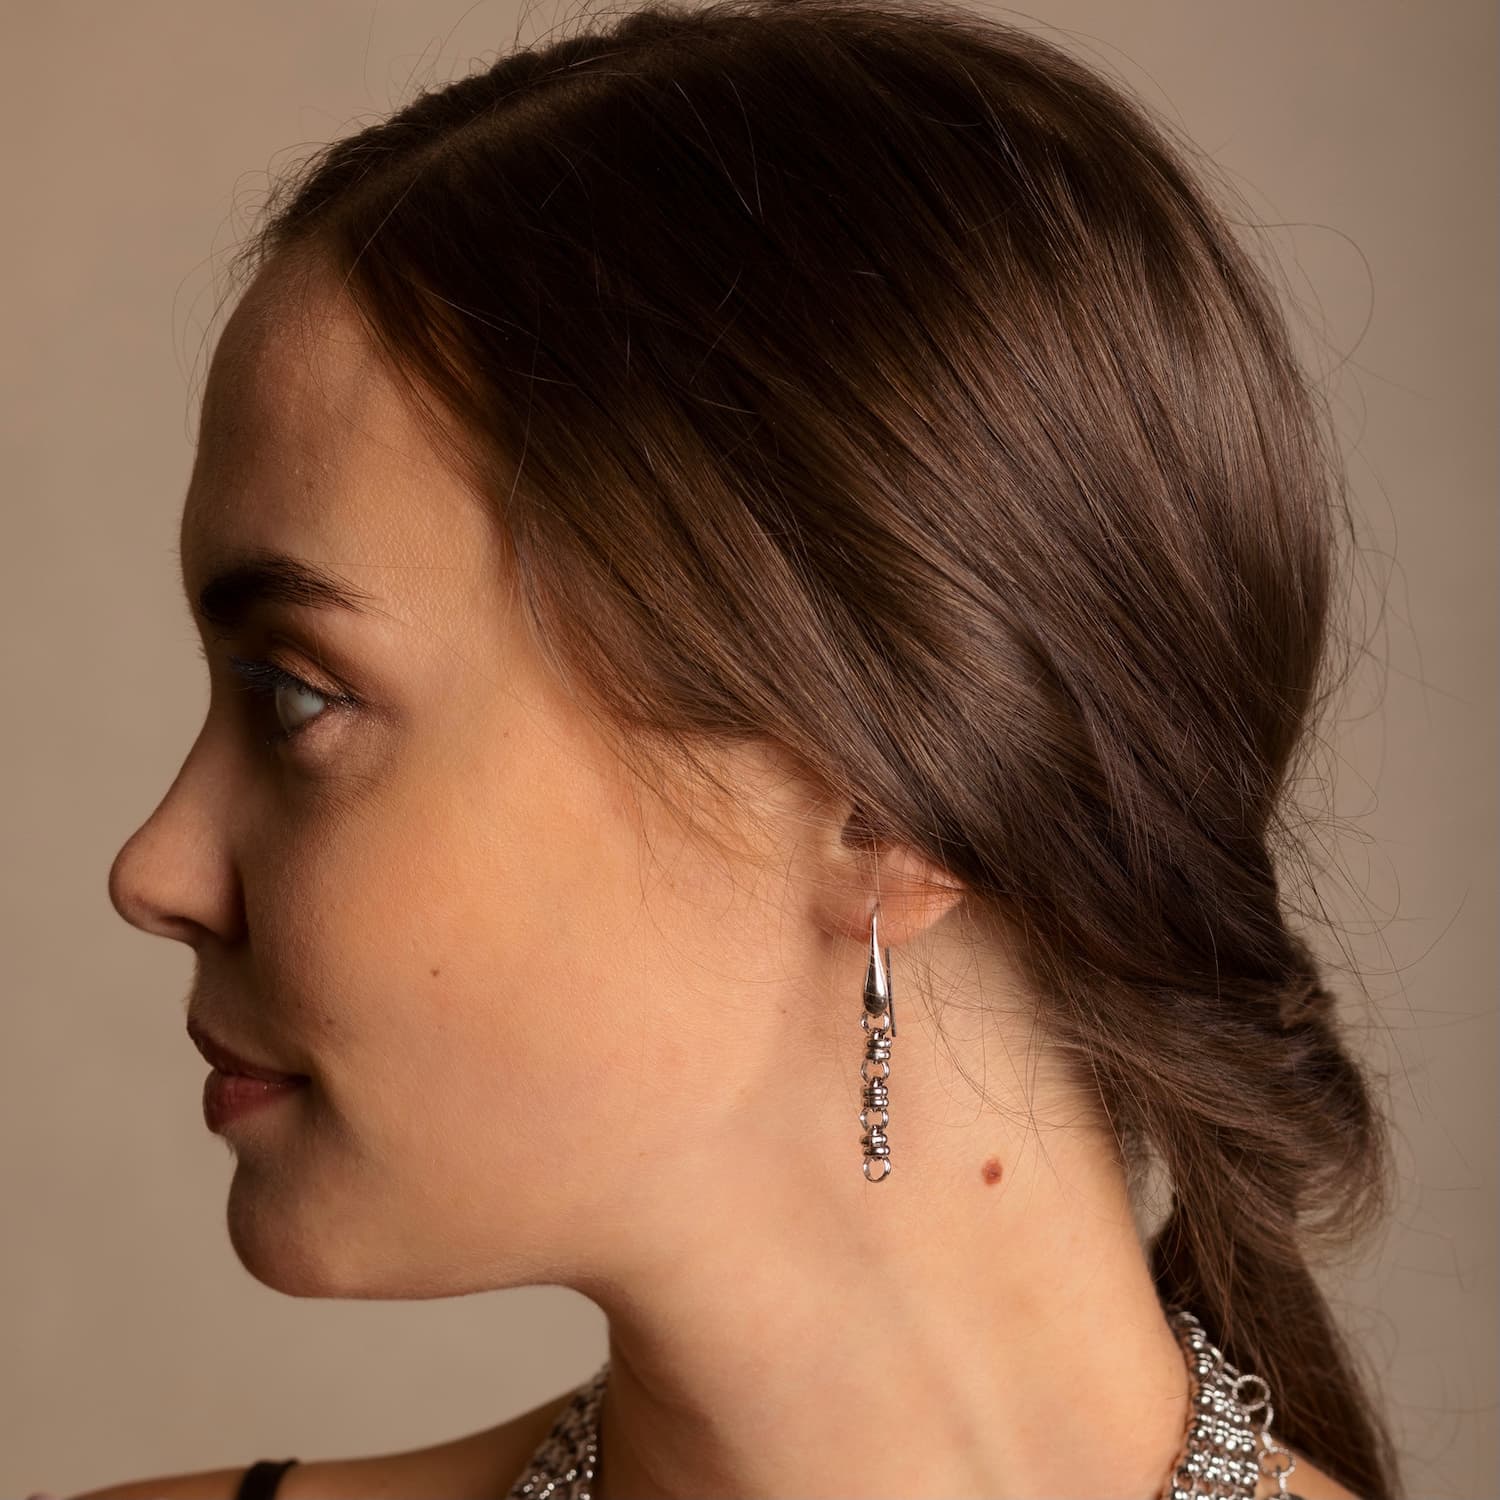 Links 5mm Earrings in Silver, Short